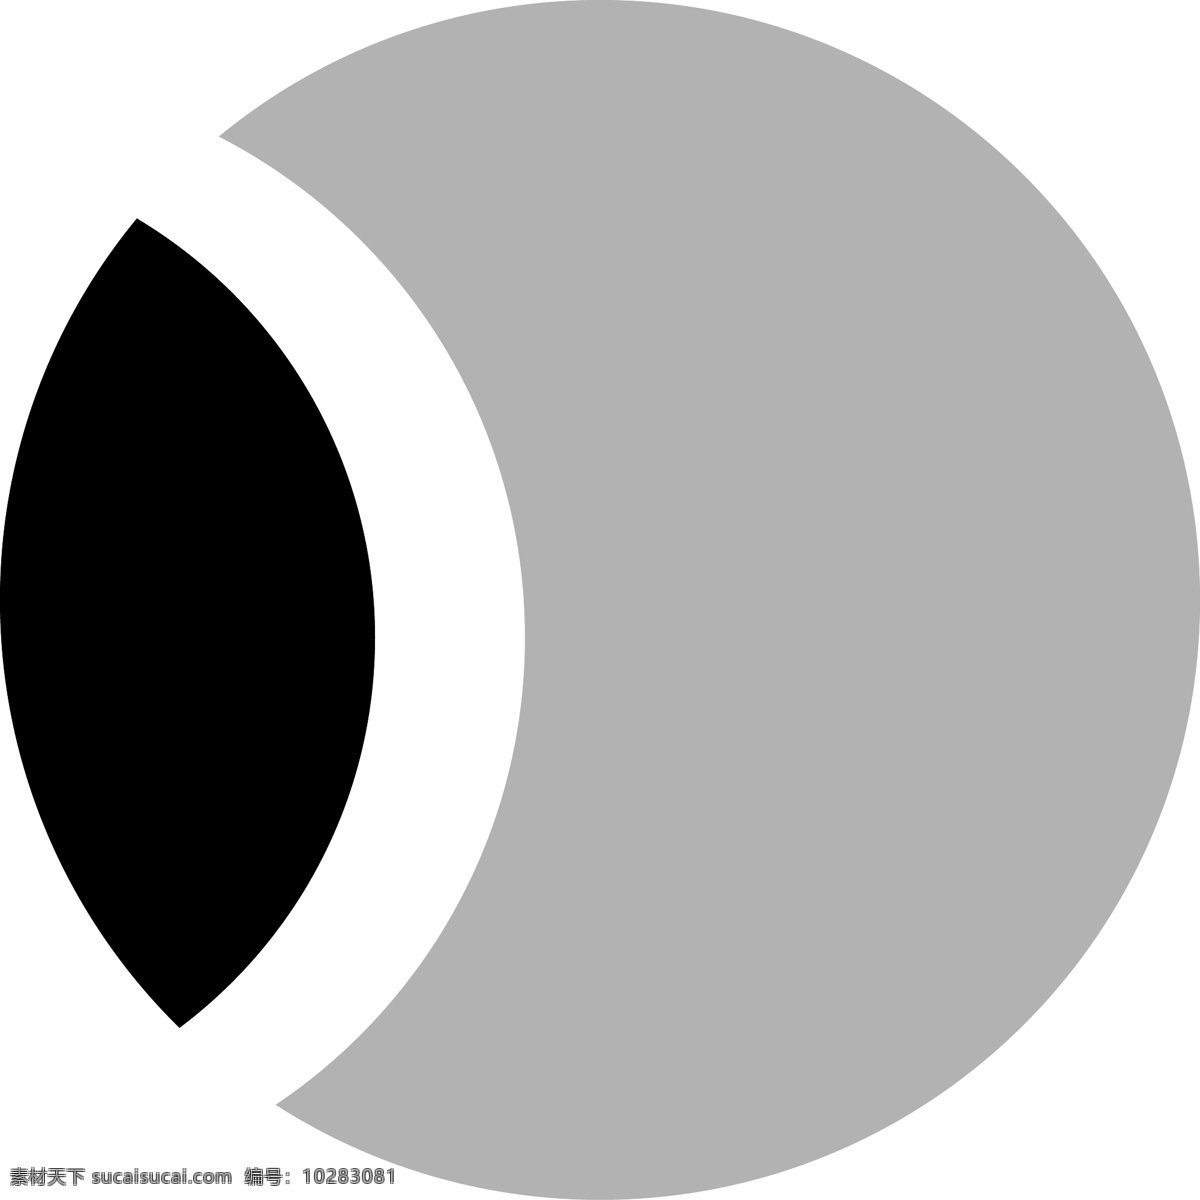 卡通 黑 灰色 半圆 符号 图标 黑灰色 会员卡图标 移动端 活动图标 图标按钮 符号图标